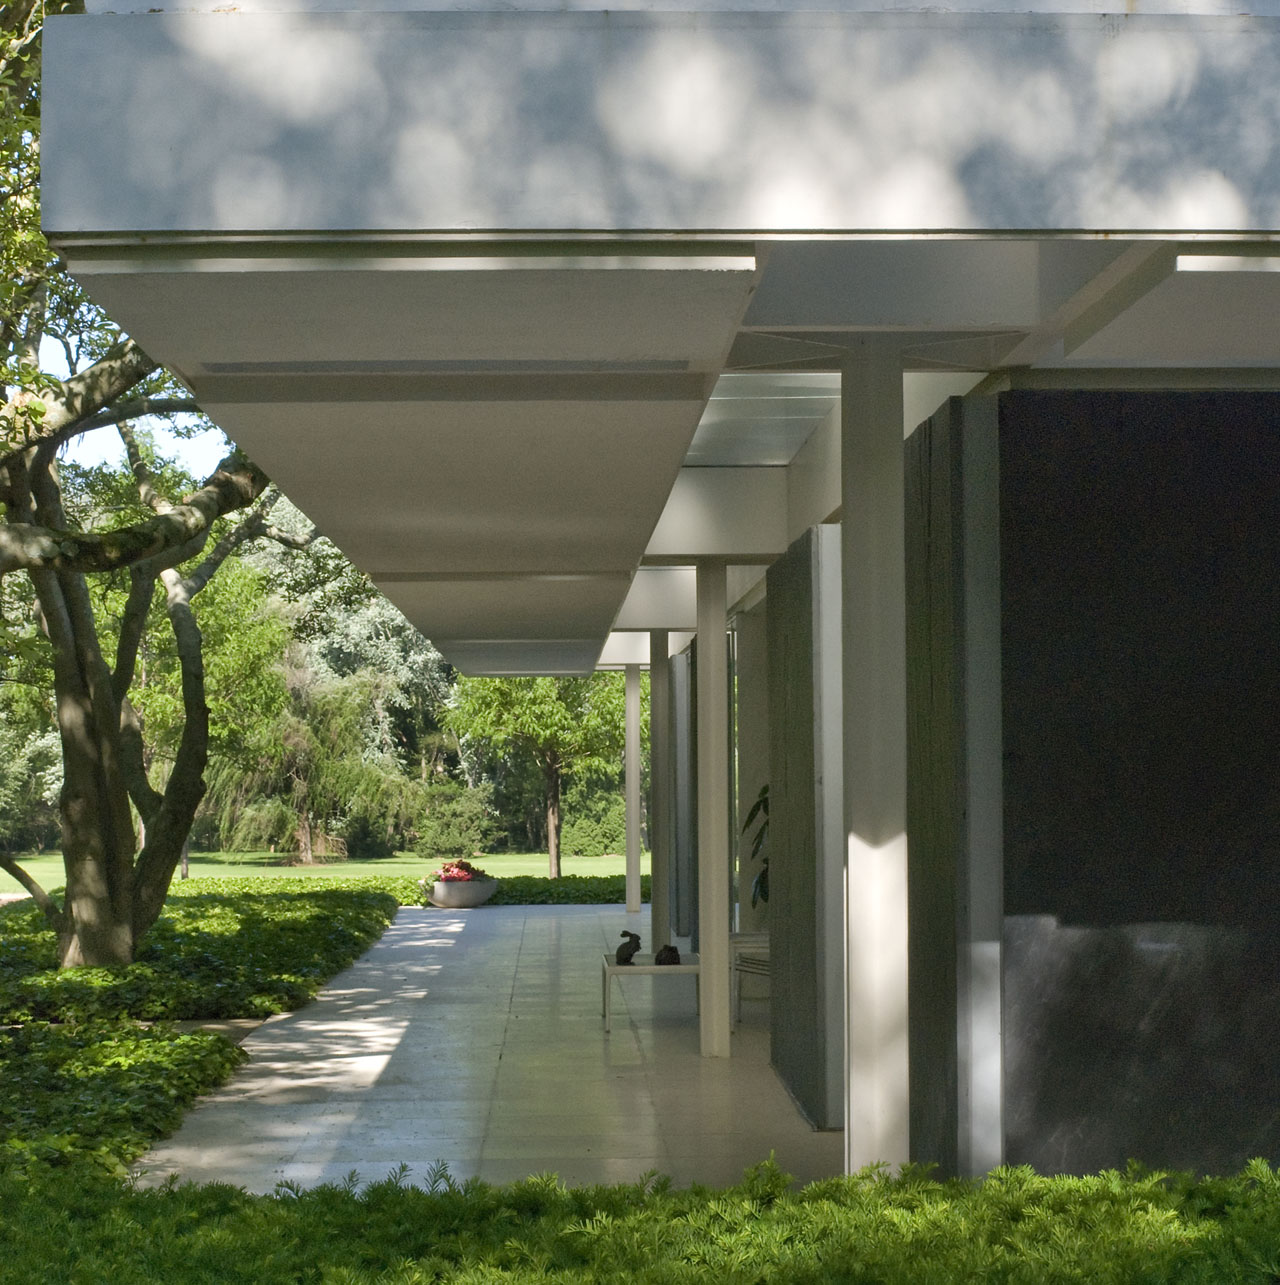 Eero Saarinen’s Miller House